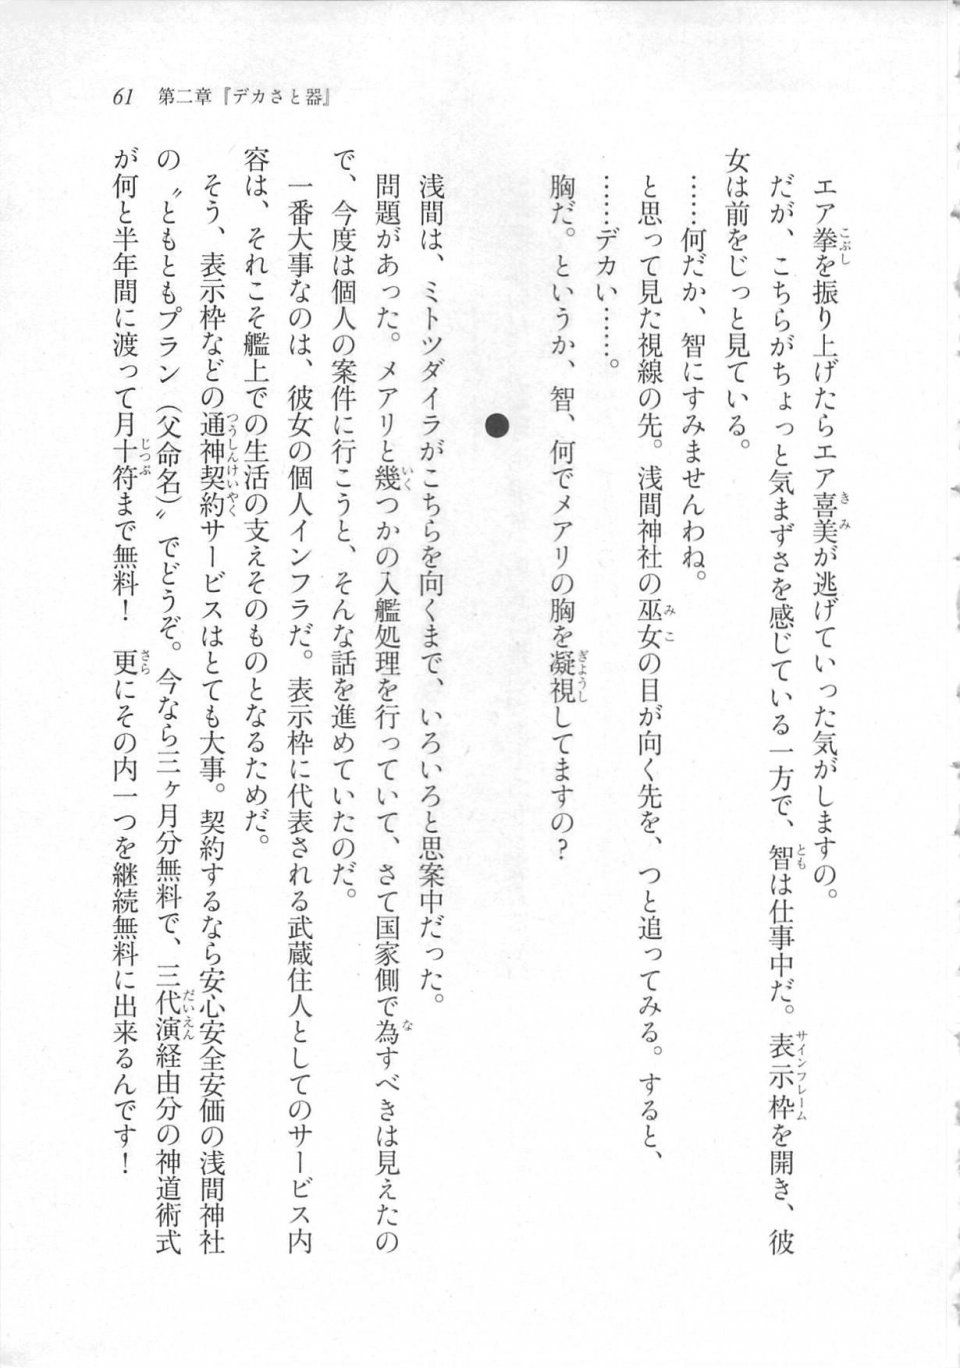 Kyoukai Senjou no Horizon LN Sidestory Vol 3 - Photo #65